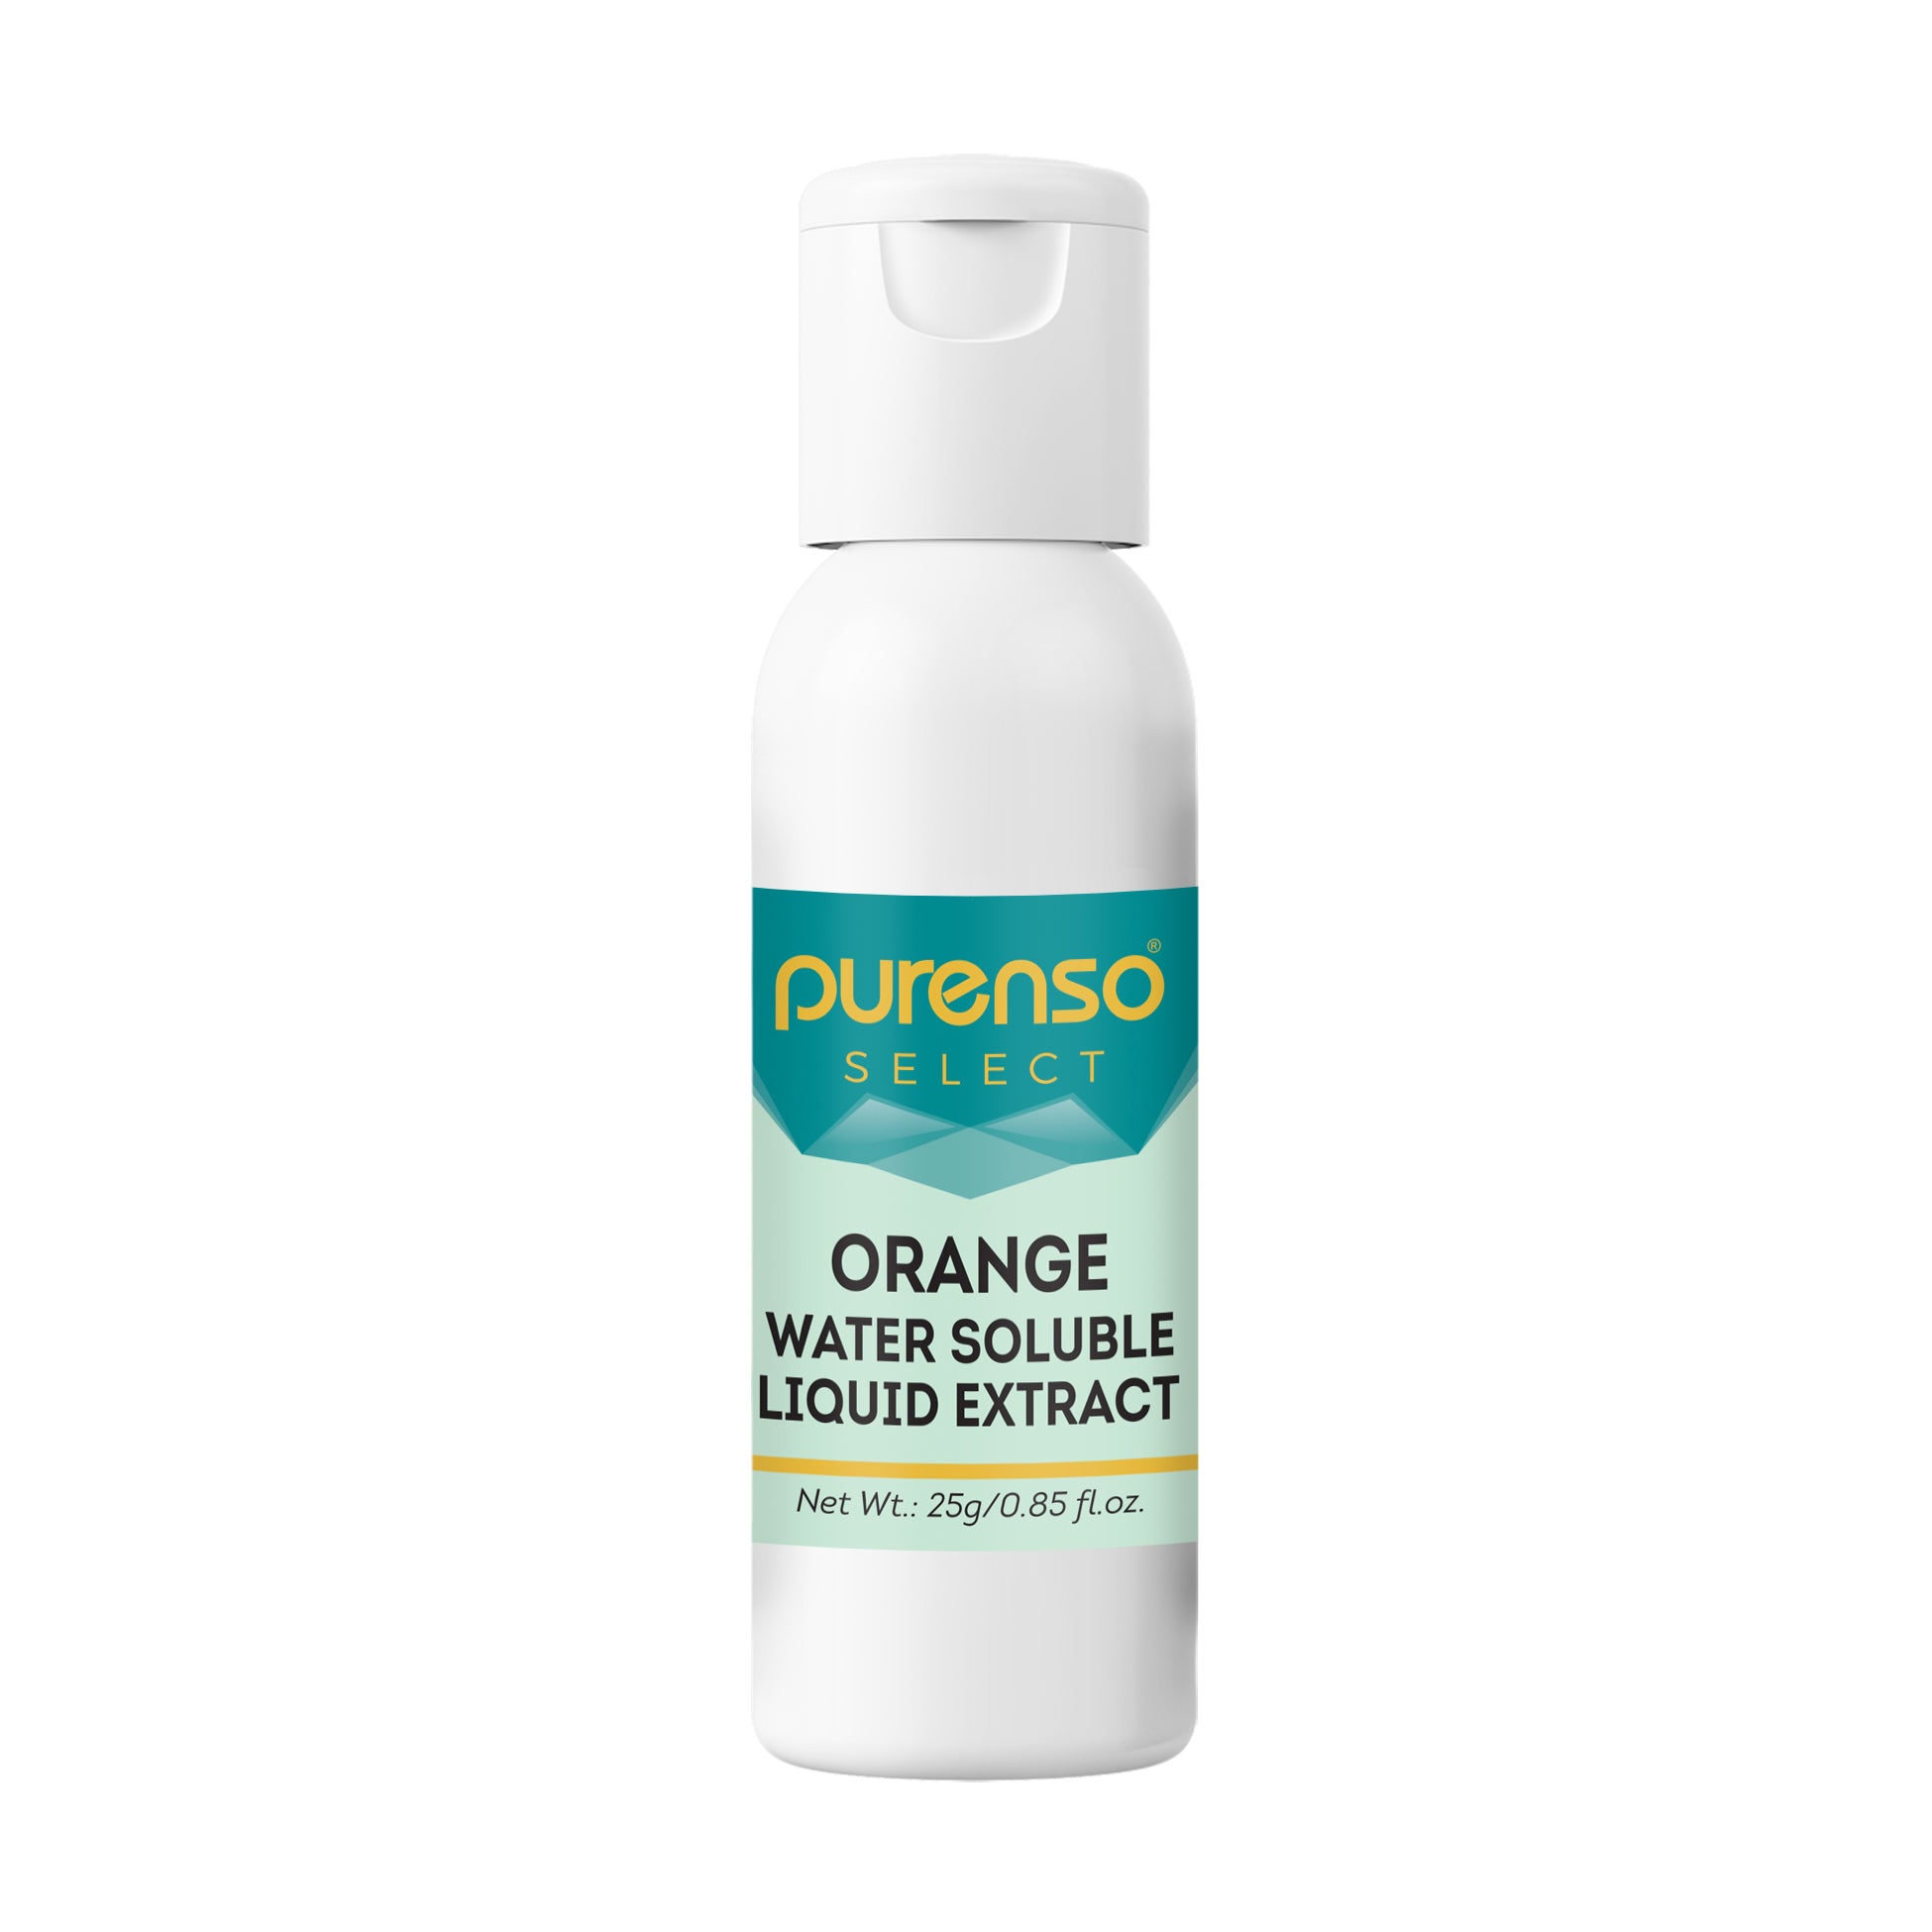 Orange Liquid Extract - Water Soluble